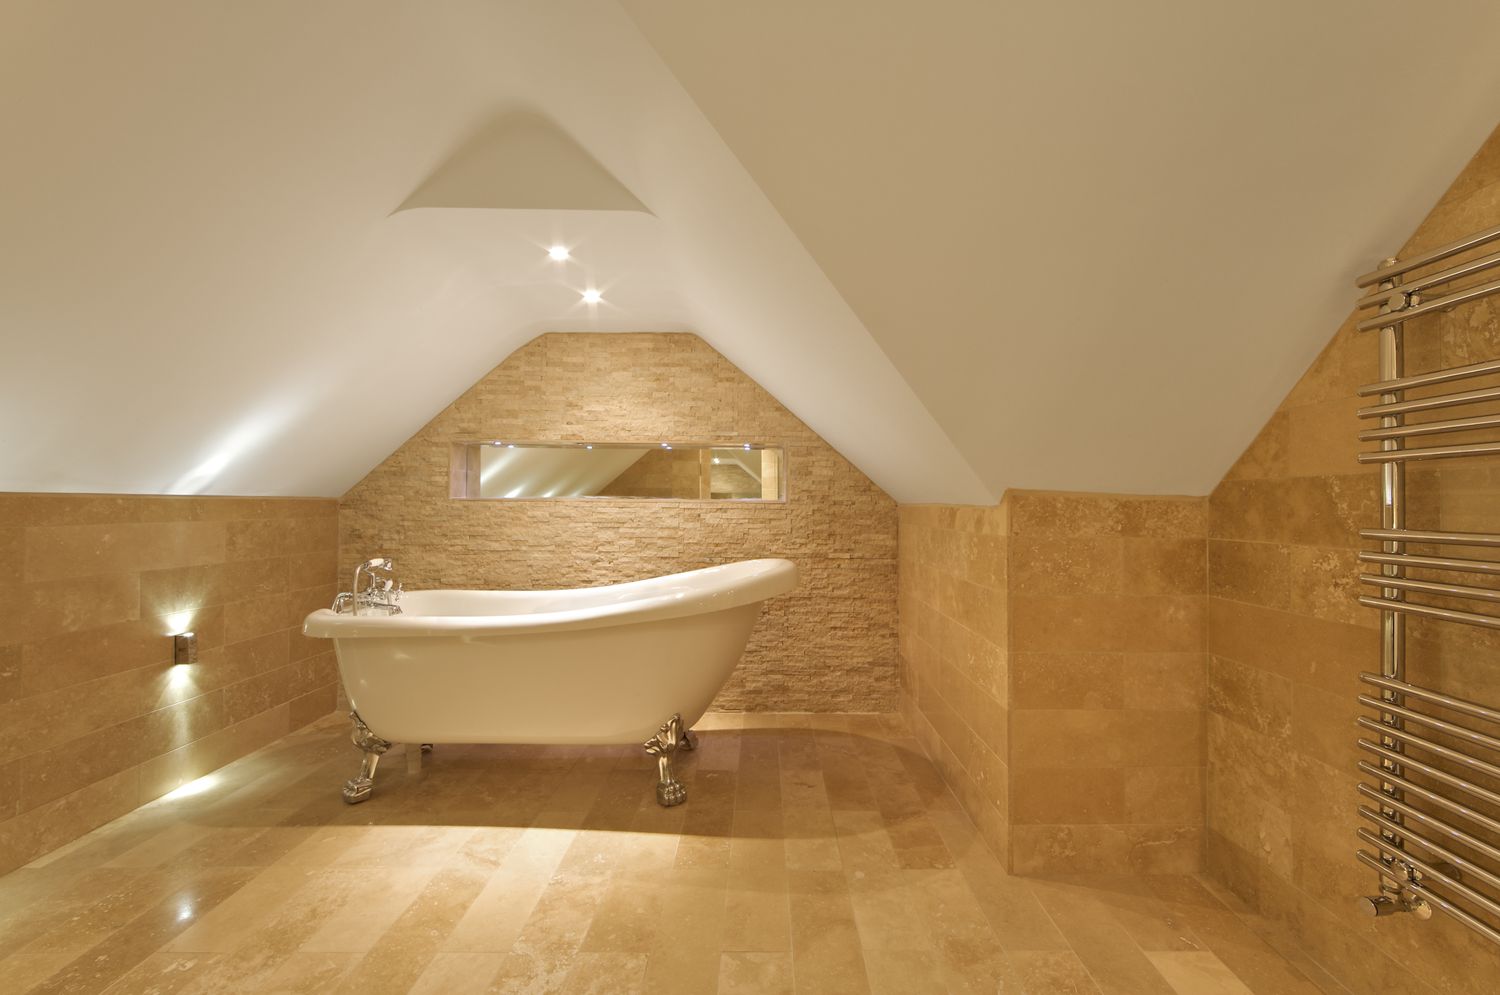 Una elegante bañera romana en baño abuhardillado, baldosas de mármol en suelo y paredes, moderno toallero